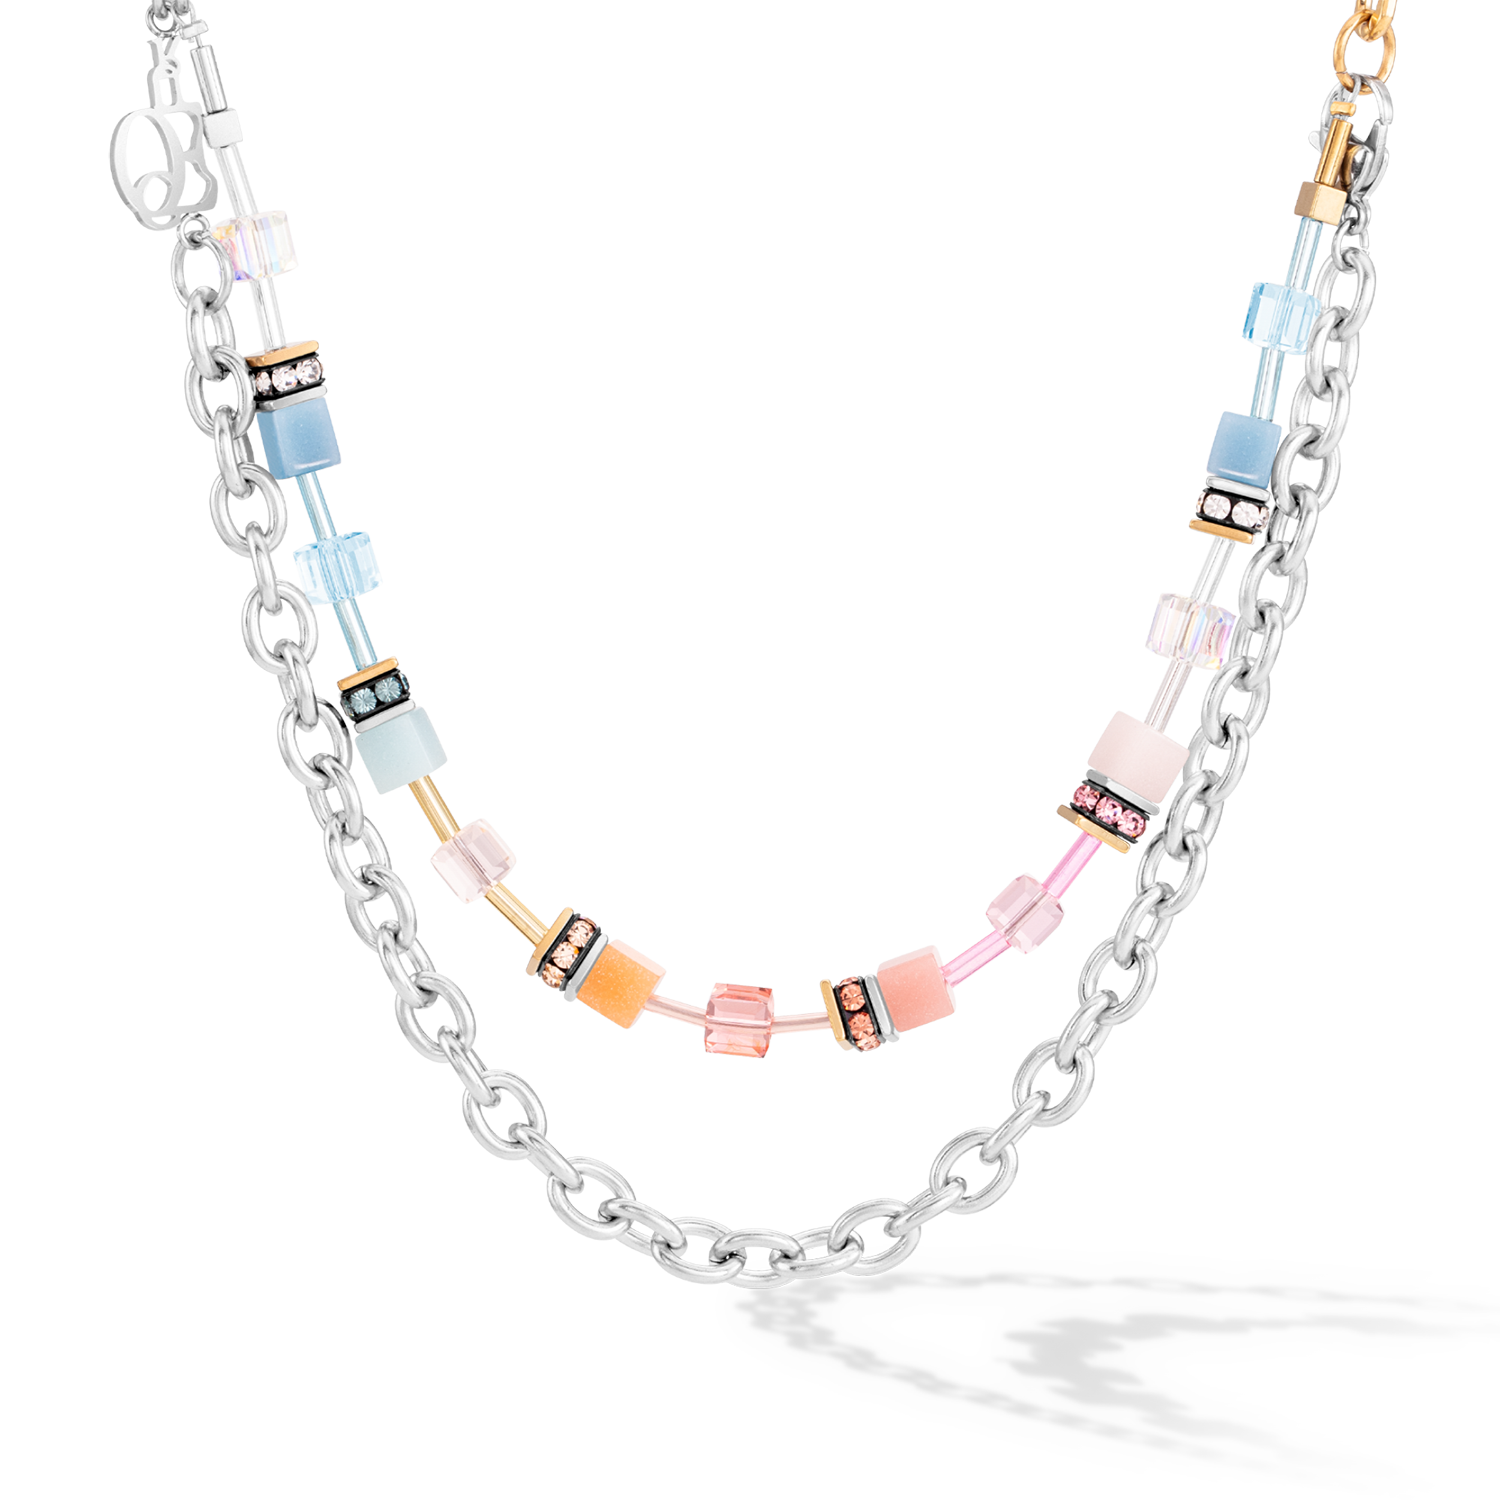 GeoCUBE® Iconic Fusion Chain necklace aqua-apricot